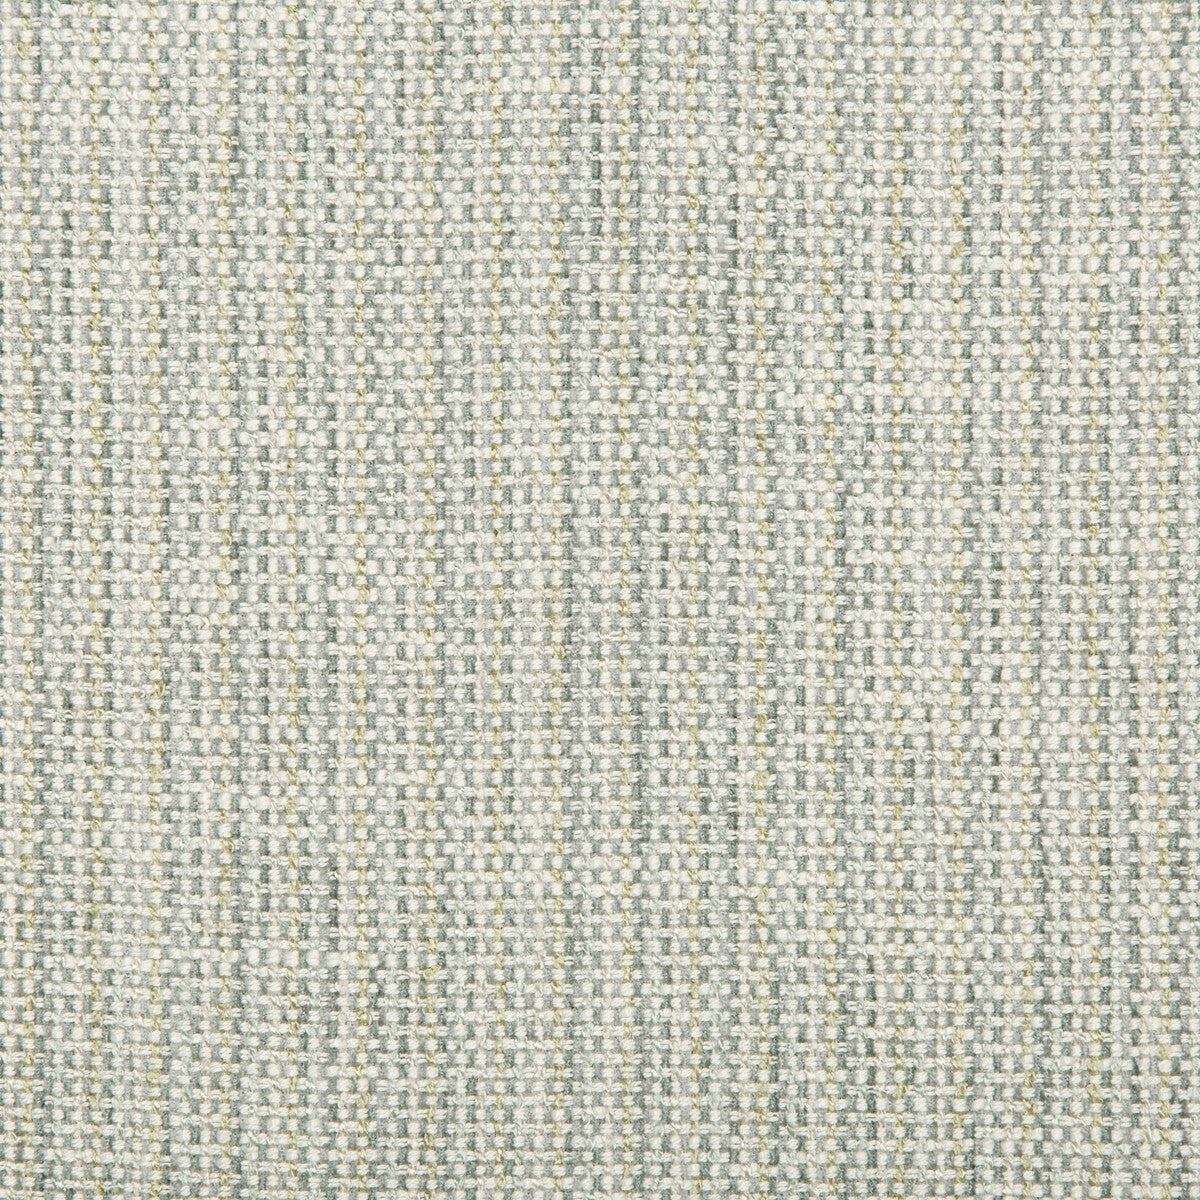 Kravet Design fabric in 35639-13 color - pattern 35639.13.0 - by Kravet Design